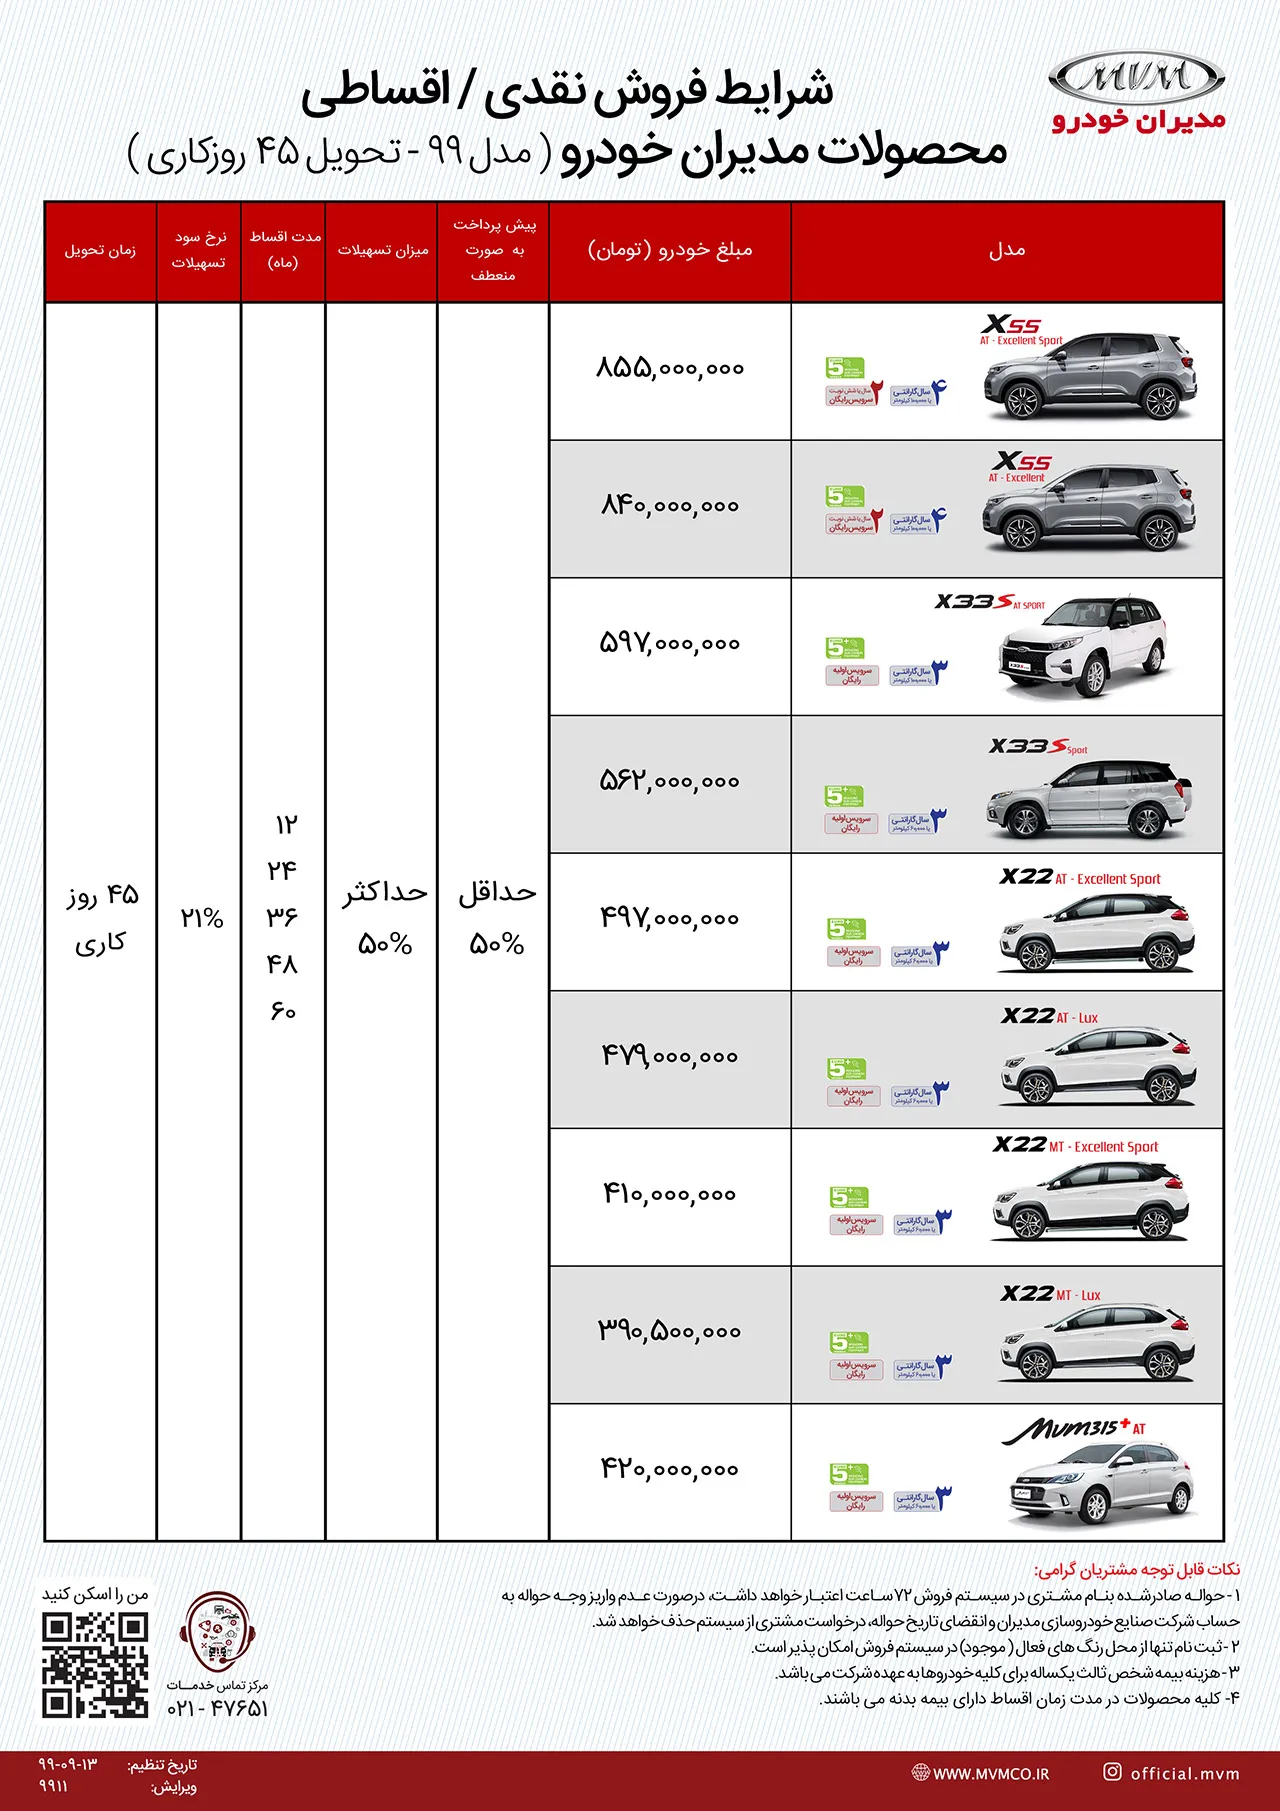 AutomobileFa MVM Sale Plan 14 Azar 99(2)